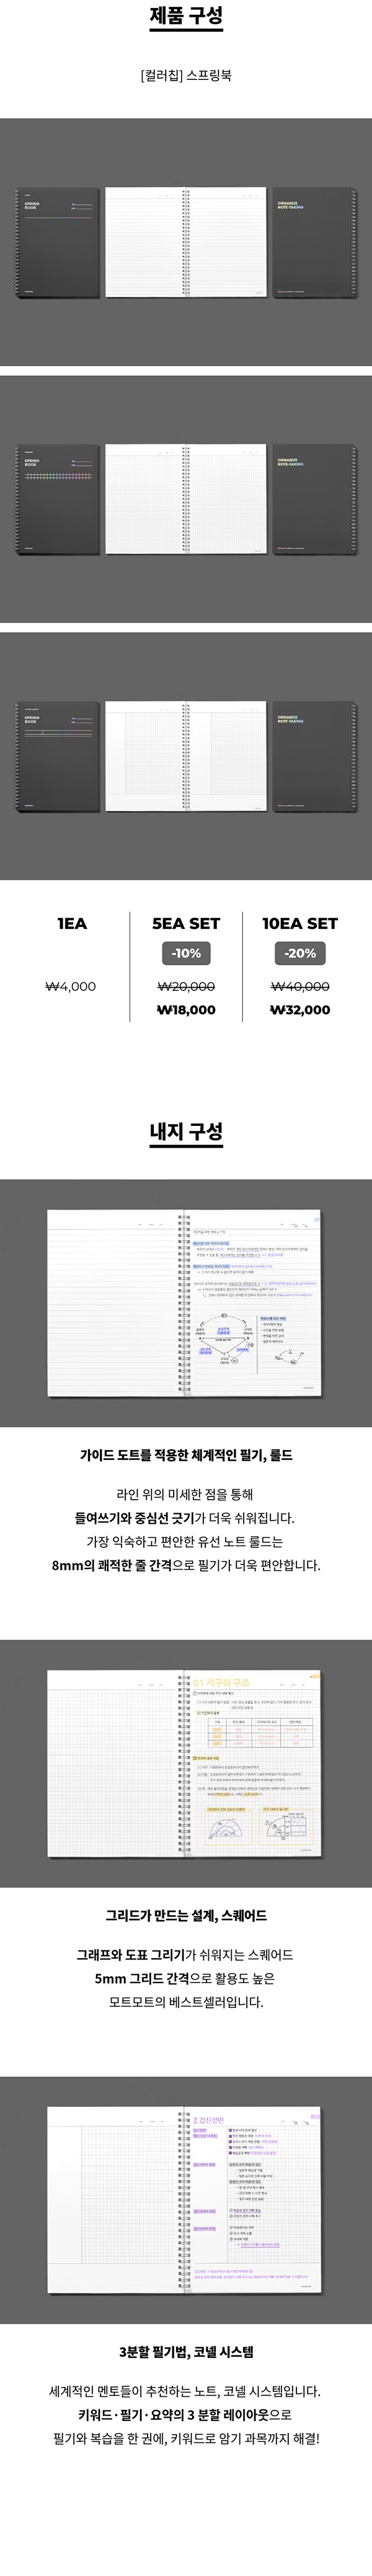 [모트모트] 스프링북 컬러칩 - 다크호스 (룰드)